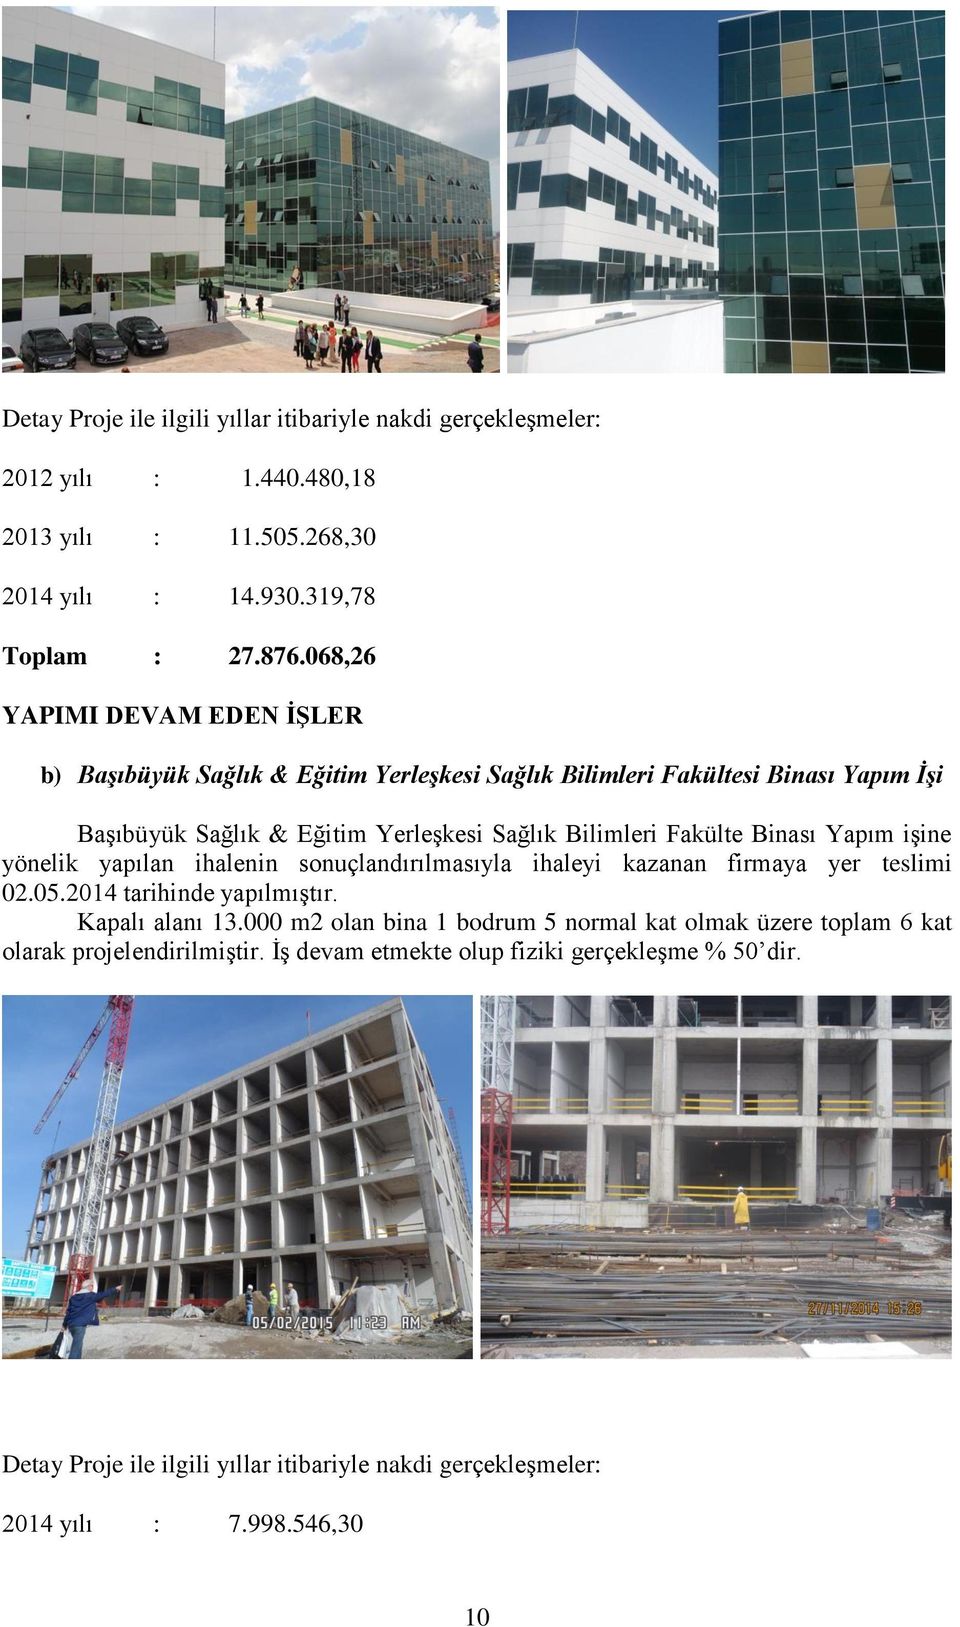 Binası Yapım işine yönelik yapılan ihalenin sonuçlandırılmasıyla ihaleyi kazanan firmaya yer teslimi 02.05.2014 tarihinde yapılmıştır. Kapalı alanı 13.